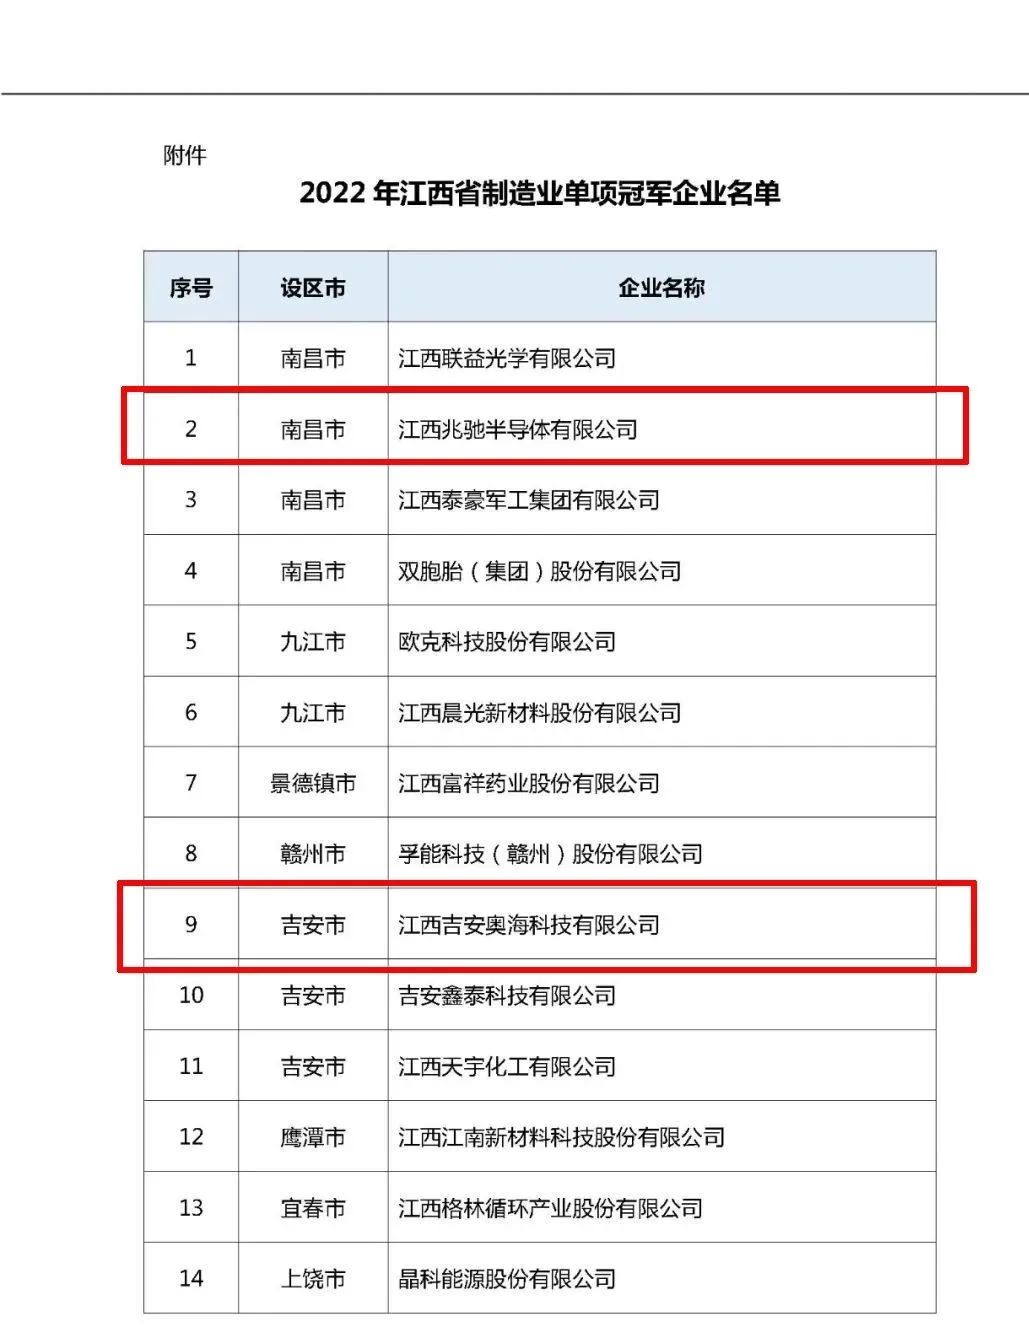 奥海、兆驰荣获2022年江西省制造业单项冠军企业